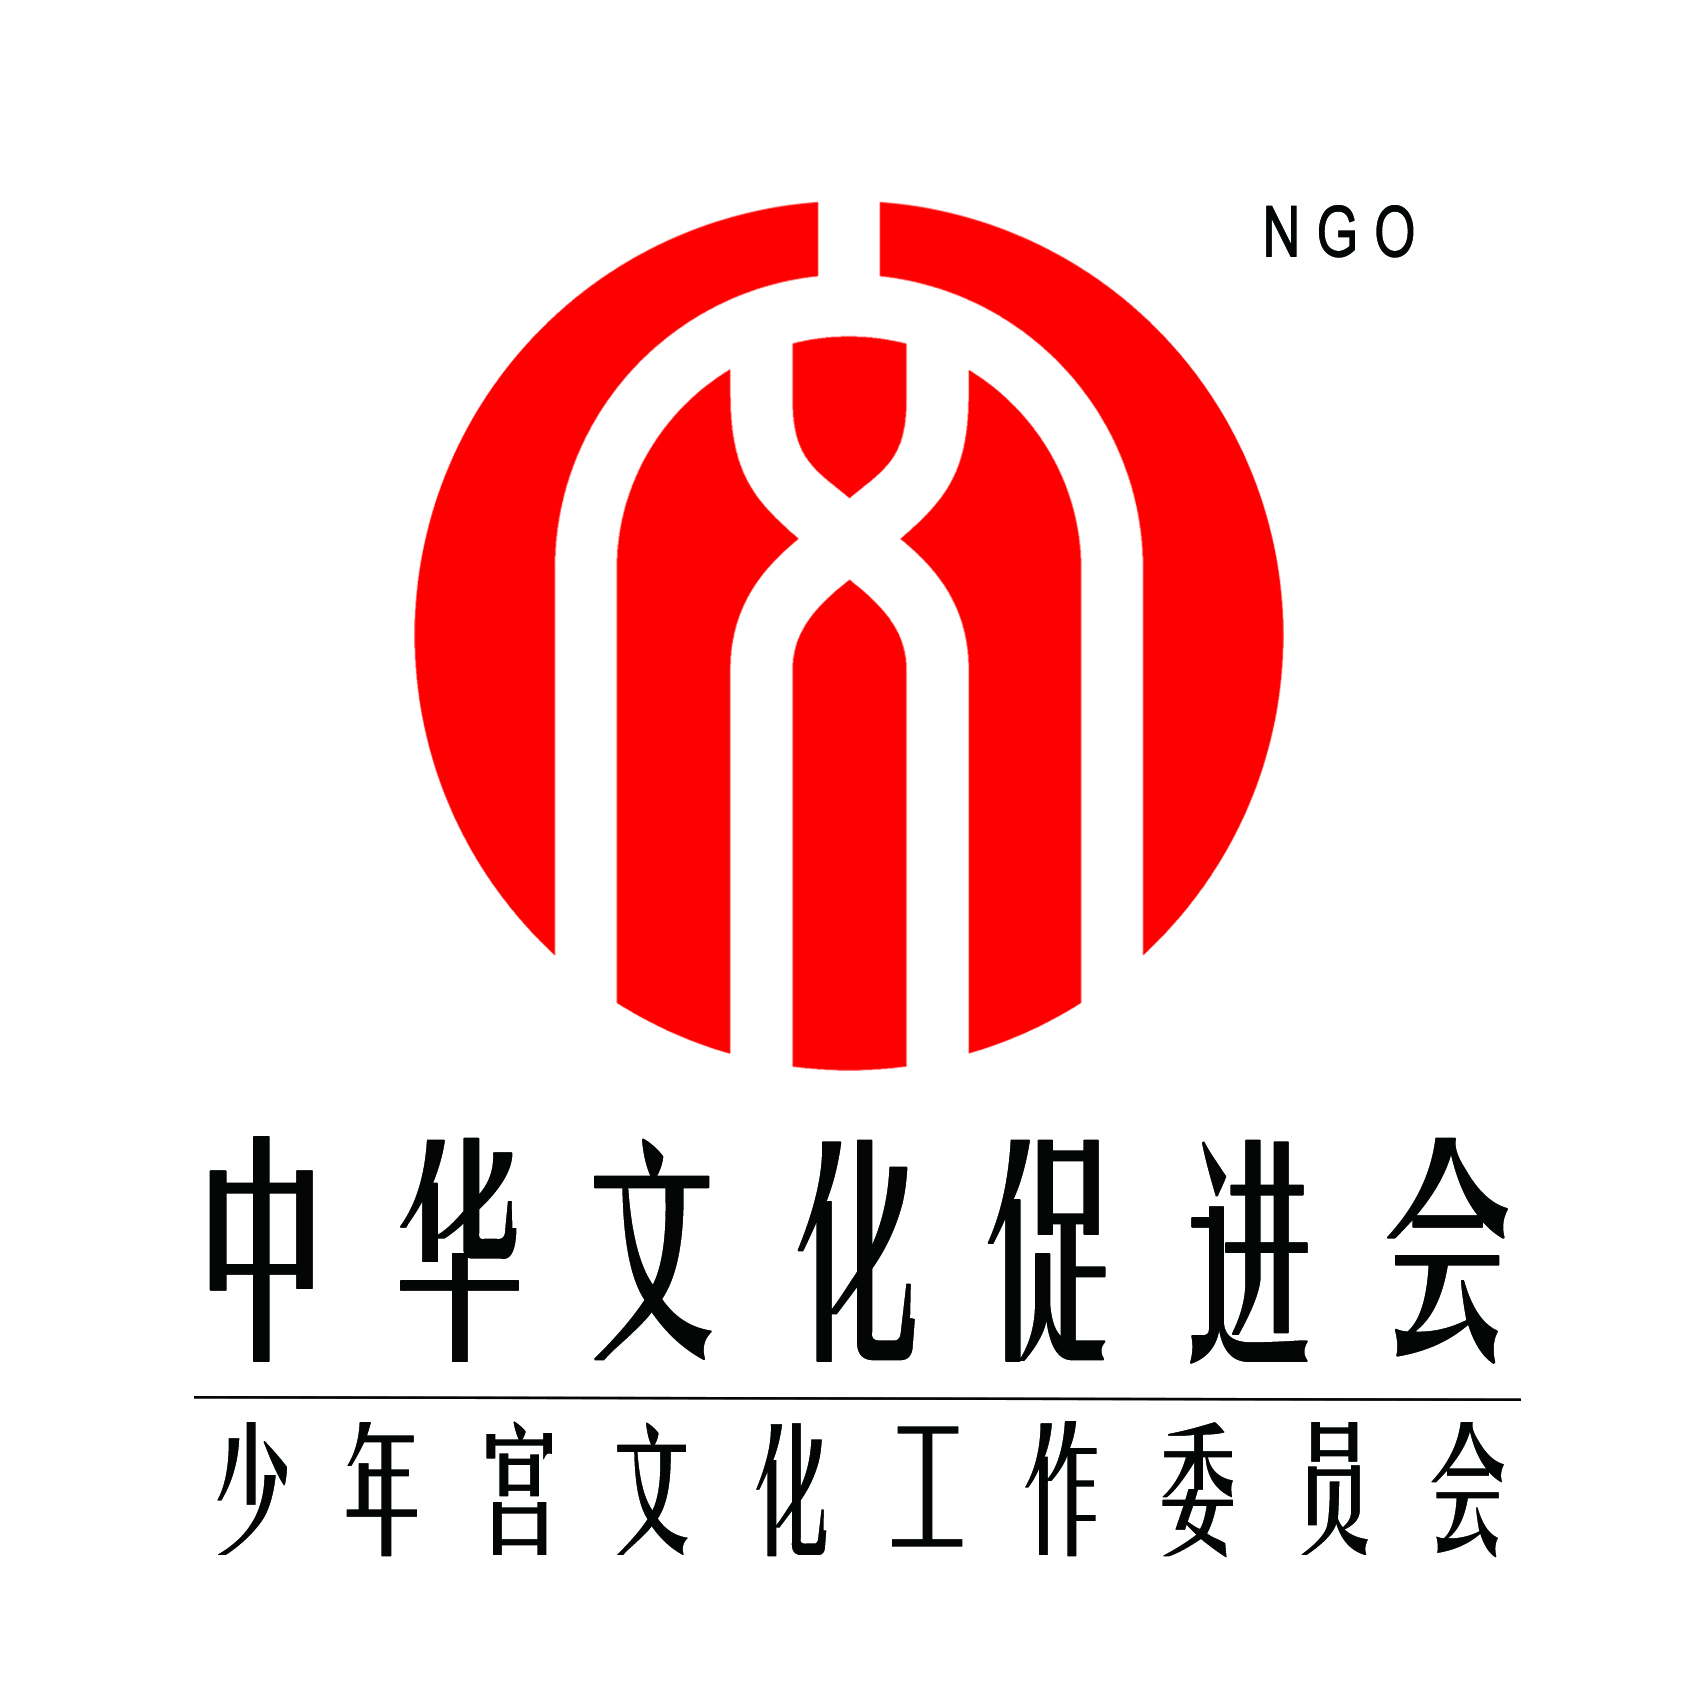 中华文化促进会少年宫文化工作委员会,简称少文委,是全国性,联合性